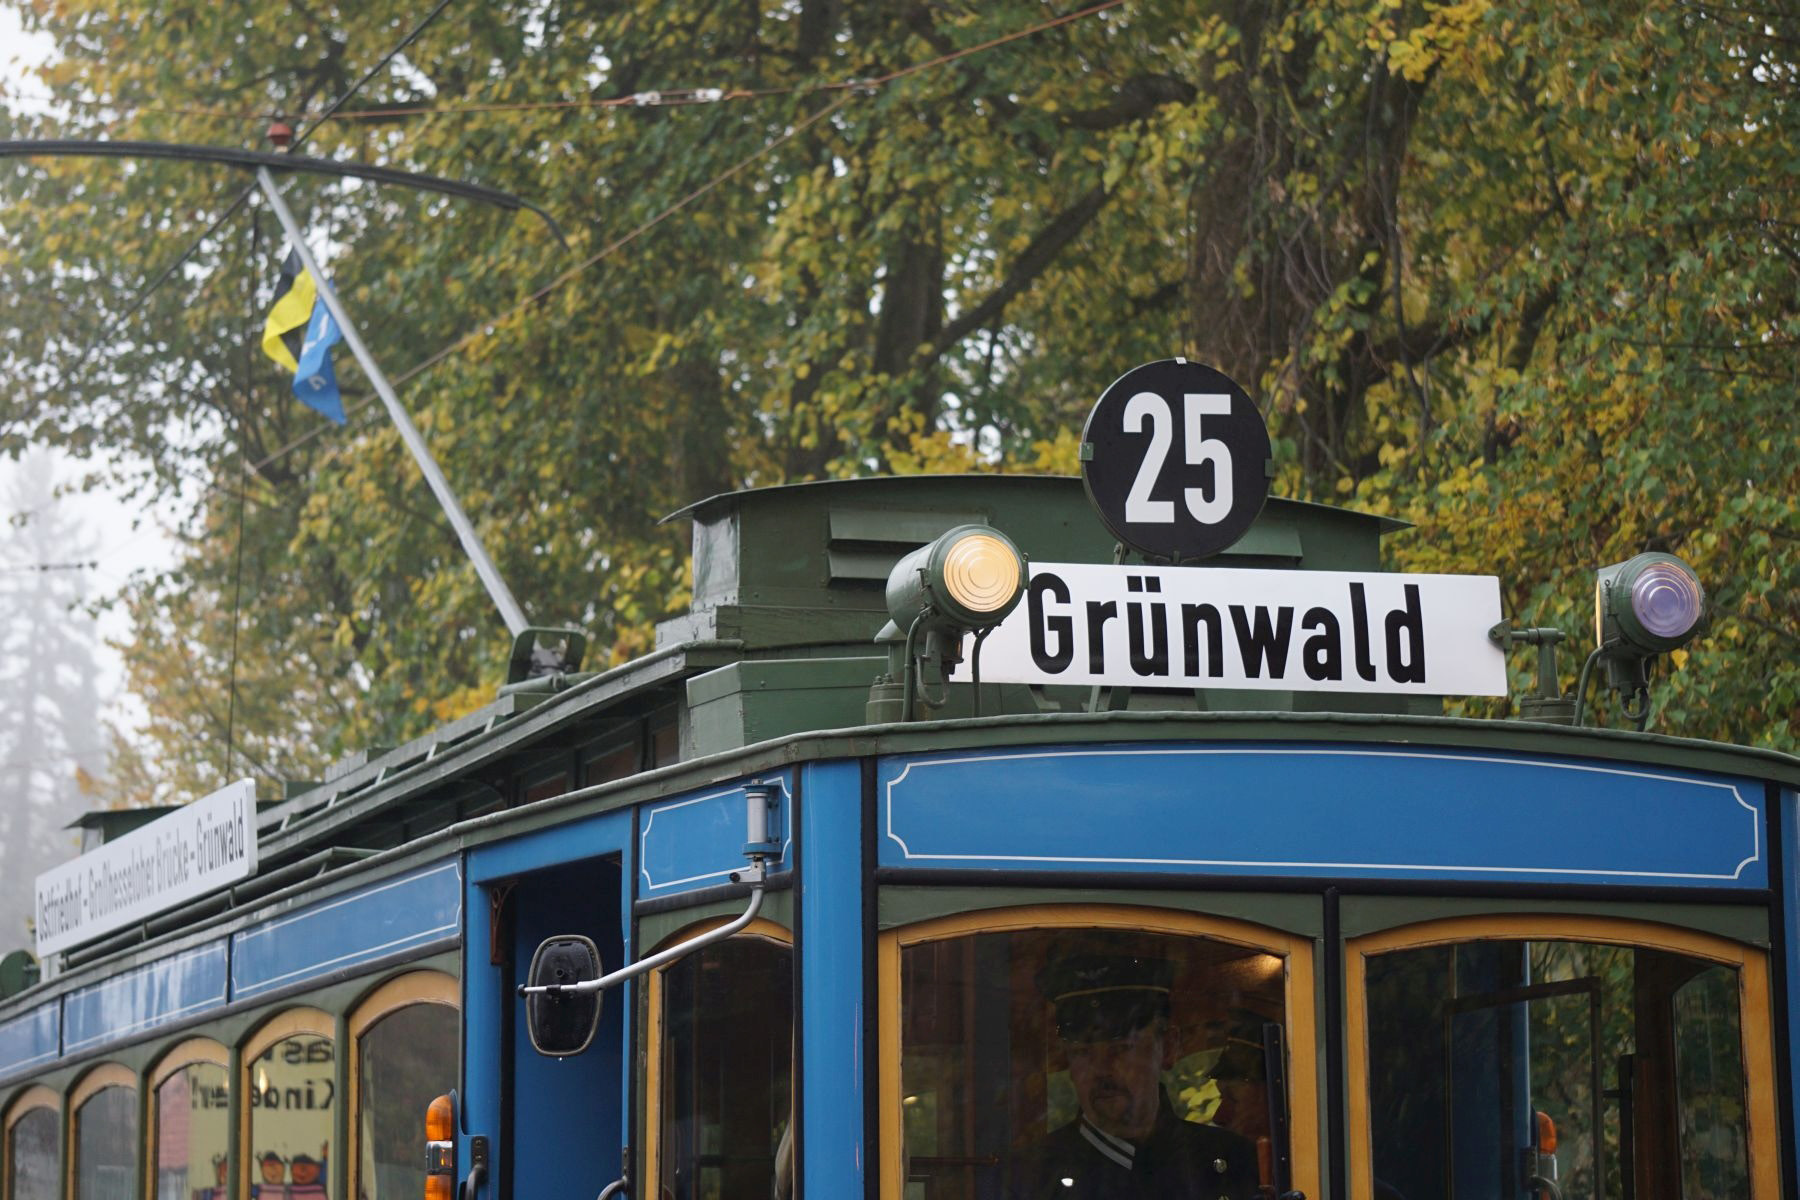 Münchens Tram quert die Stadtgrenze die Linie nach Grünwald Am 12. August 1910 ist die erste Tram zwischen München und Grünwald gefahren.